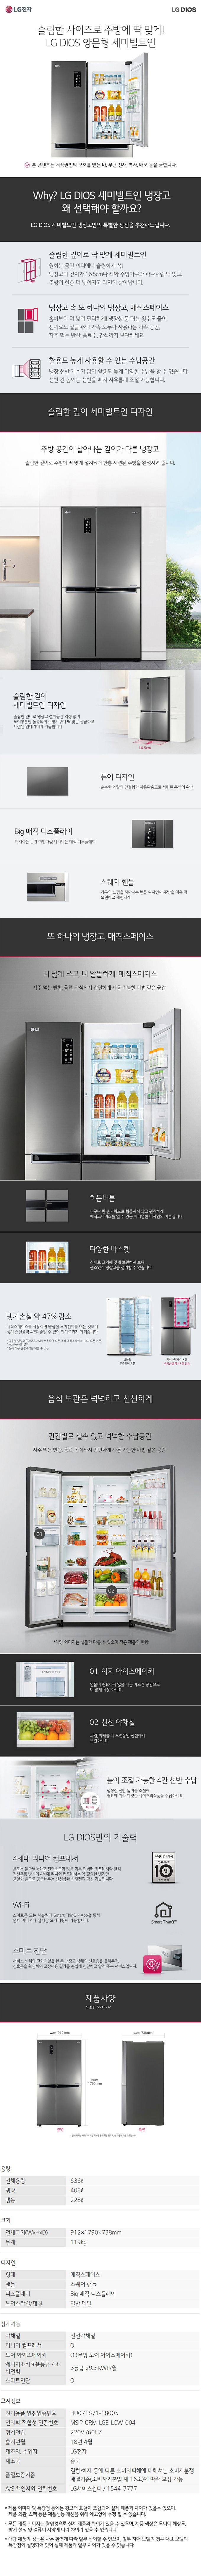 송파케이블 - LG 디오스 양문냉장고 (S631S32) 상세보기